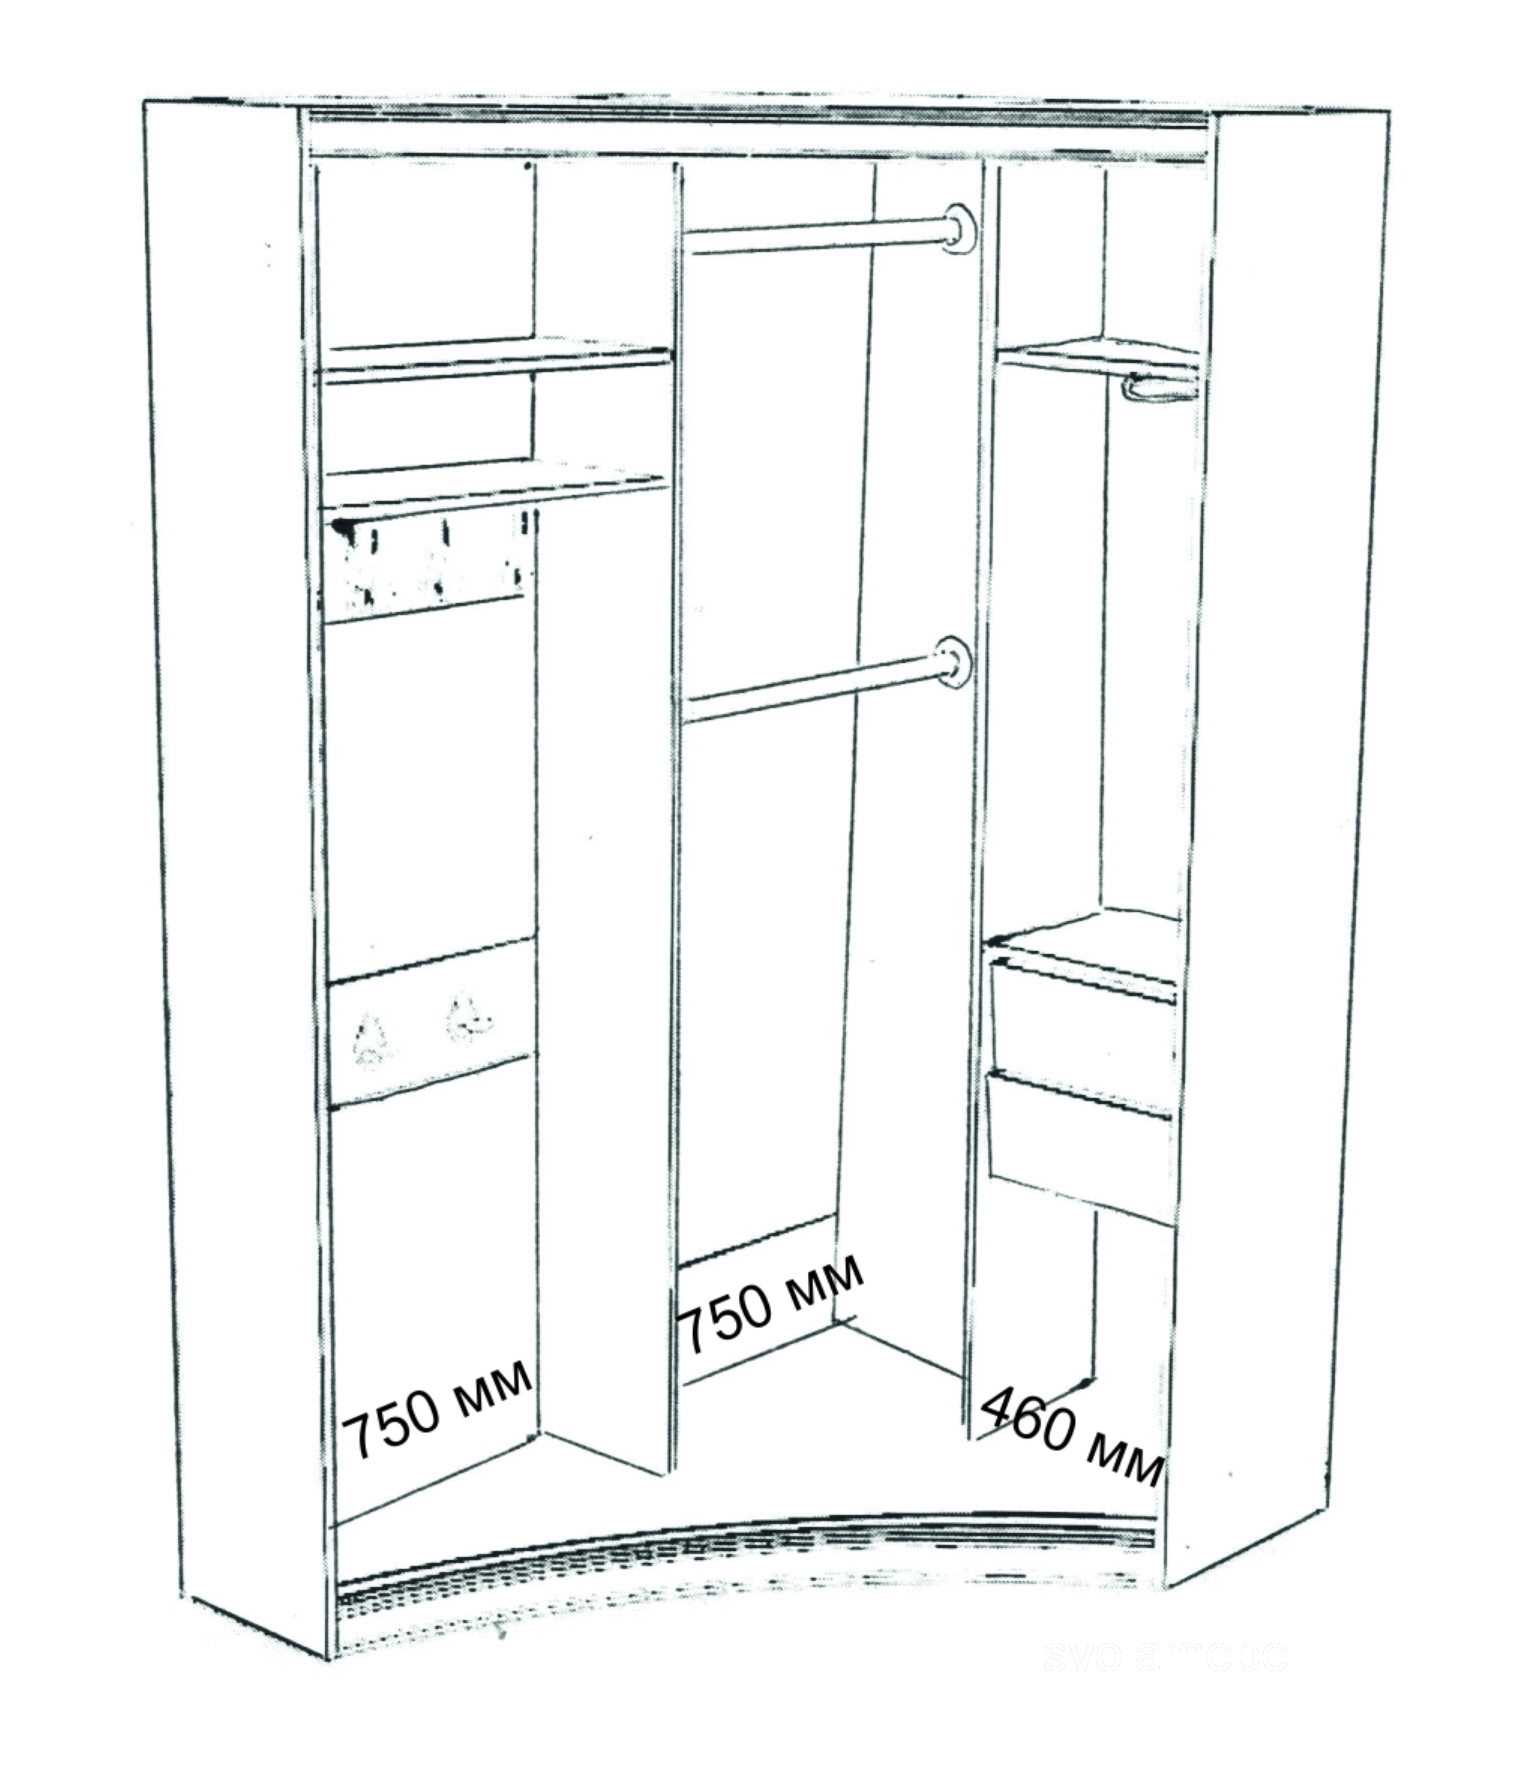 Размеры шкафа купе: ширина, глубина, высота и наполнение